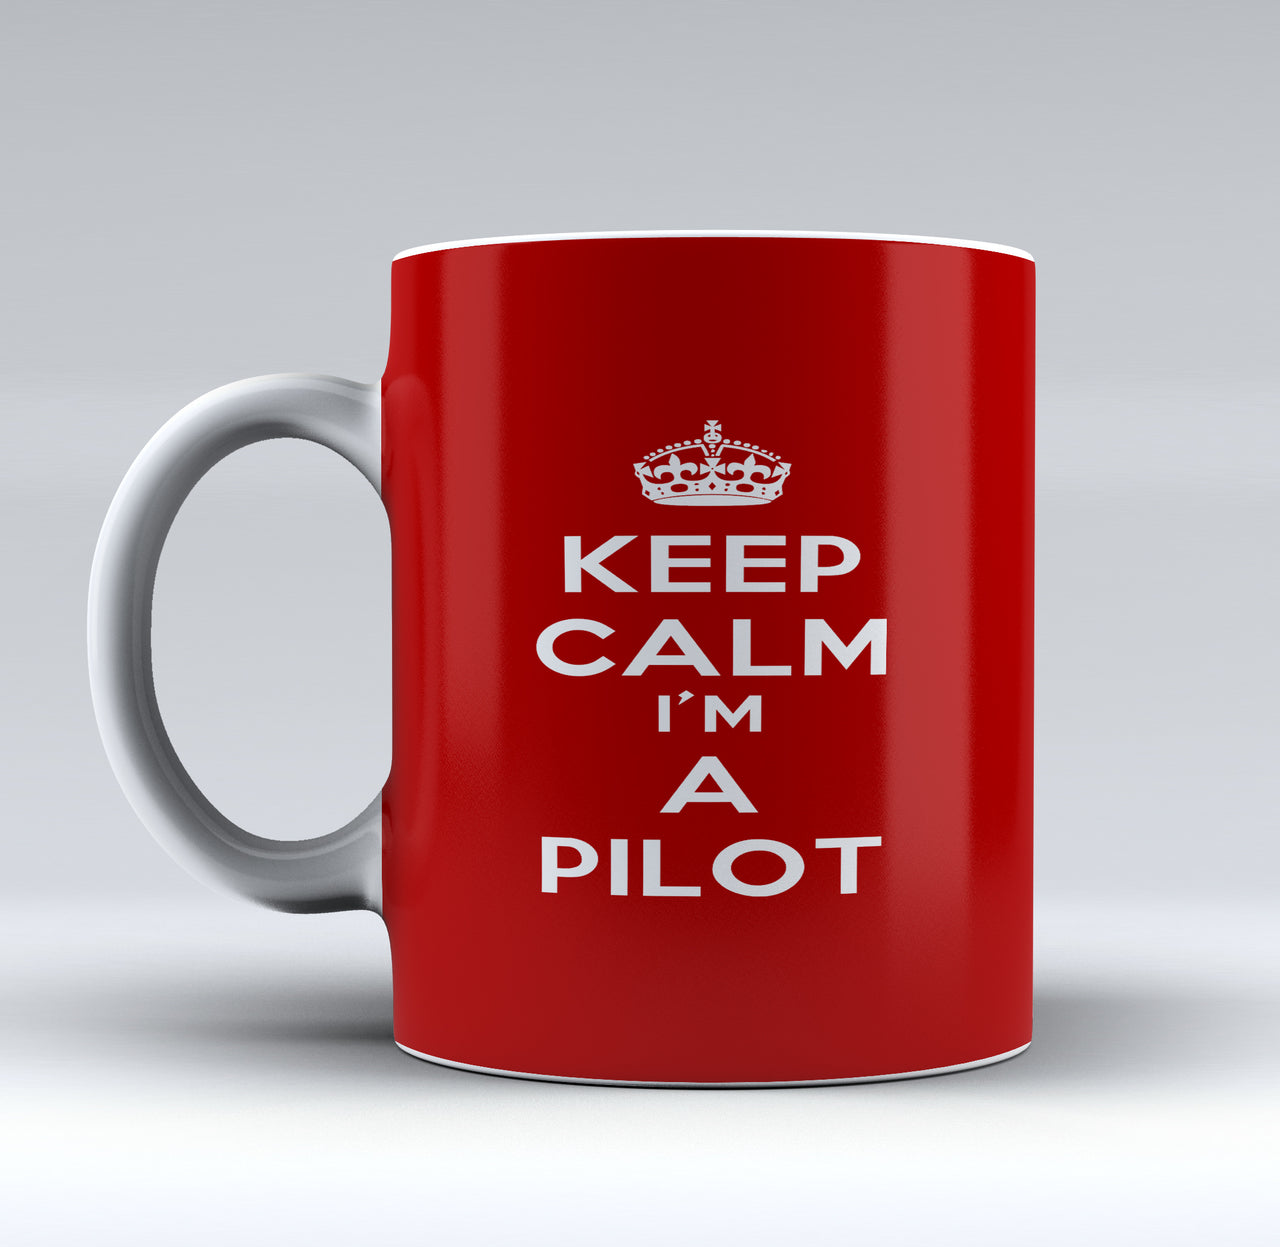 Keep Calm I'm a Pilot Designed Mugs